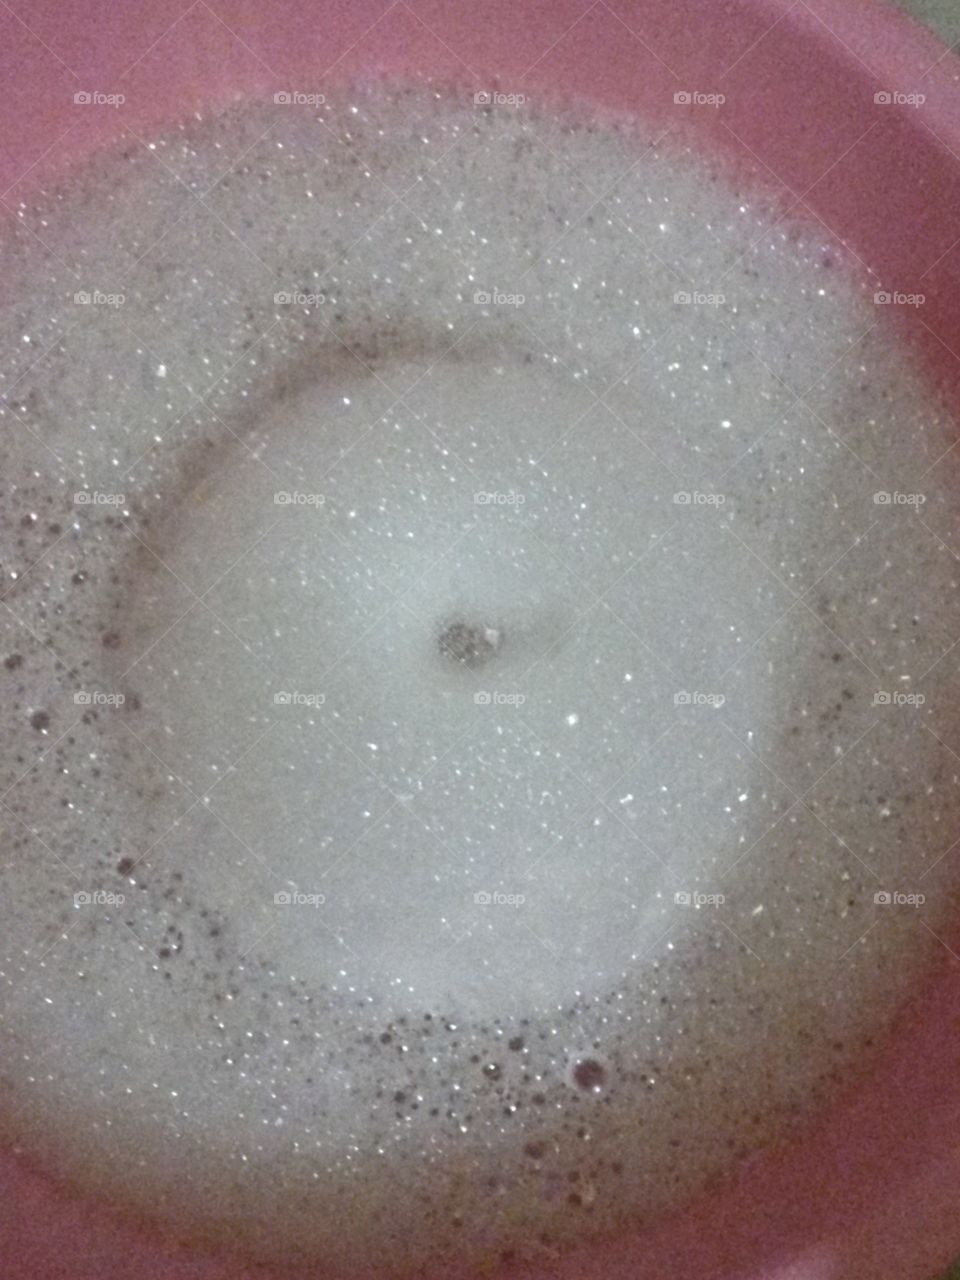 Soap foam